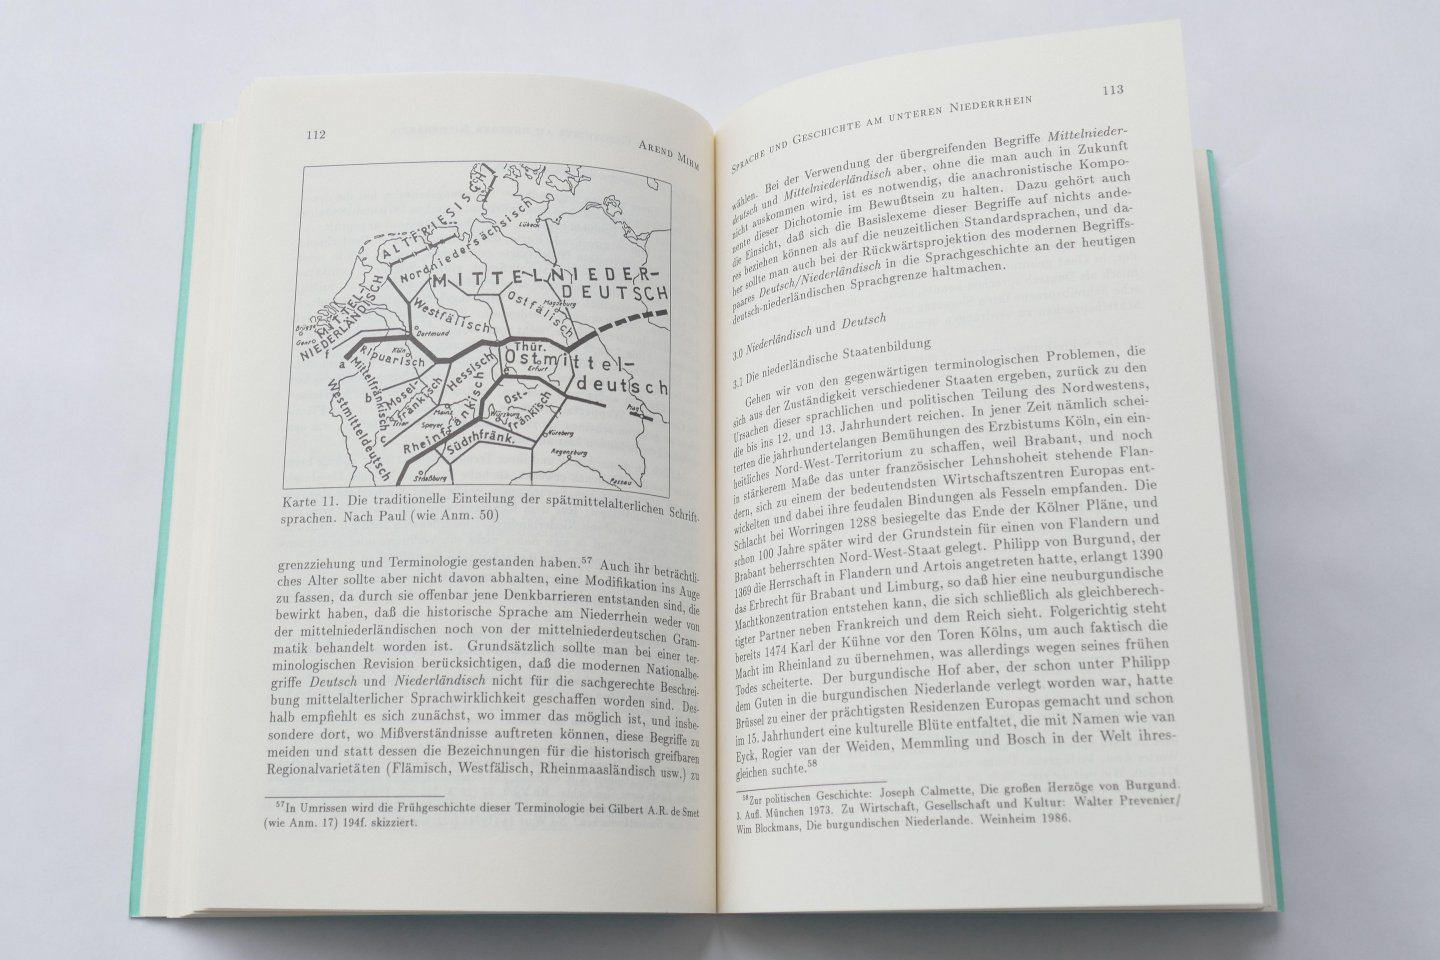 Diversen - 42 x Niederdeutsches Jahrbuch des Vereins für niederdeutsche Sprachforschung